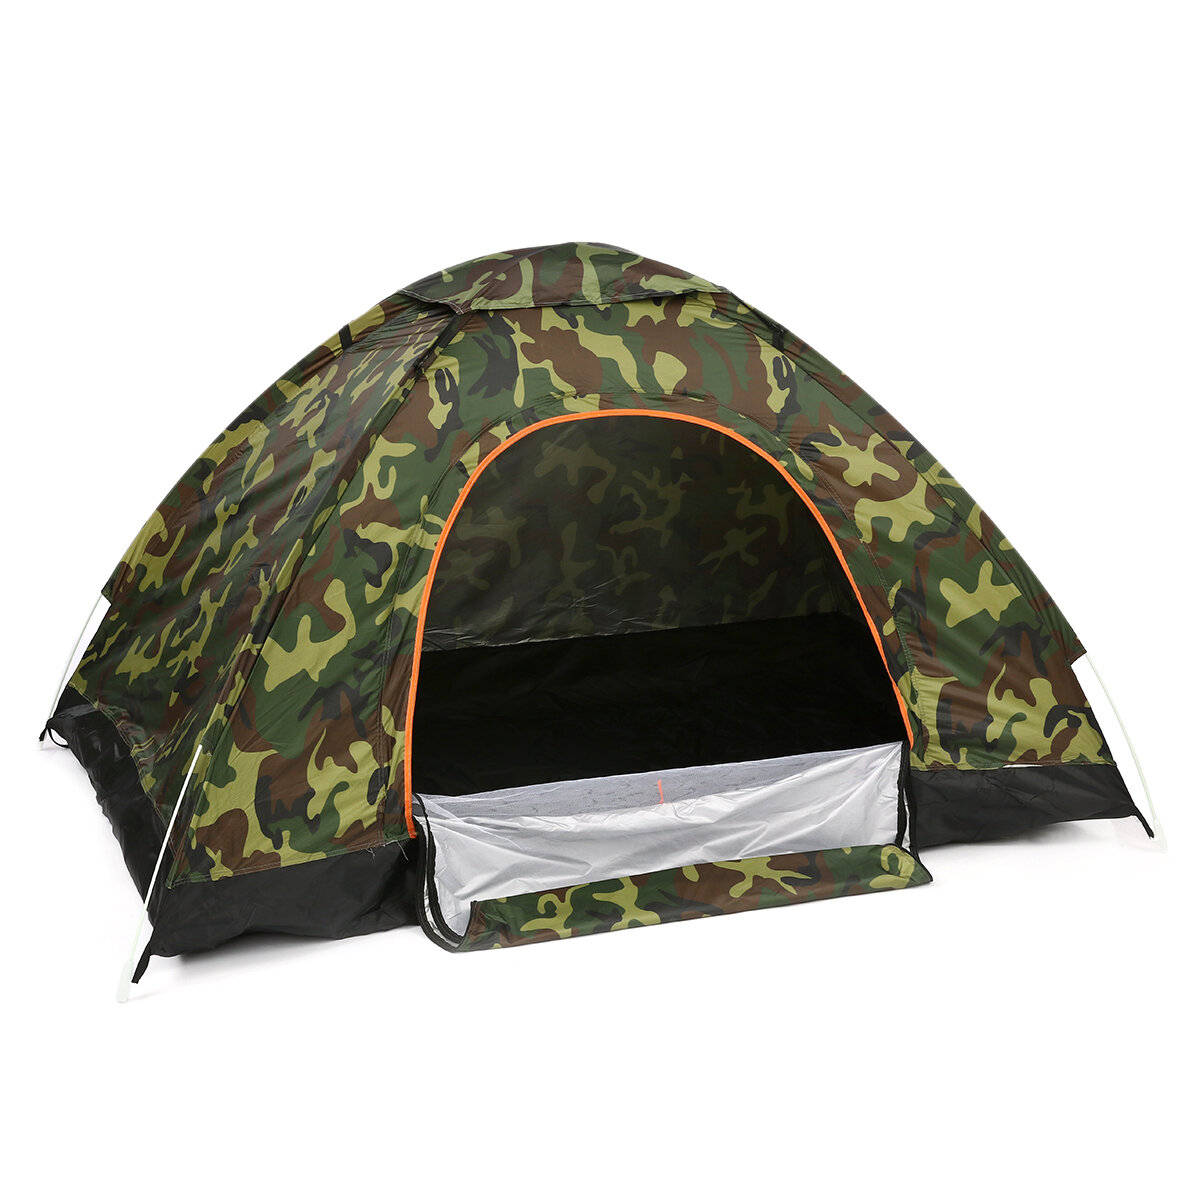 ポータブル両開き折りたたみテント2-3人防水完全自動テント屋外キャンプハイキング旅行テントサンシェード